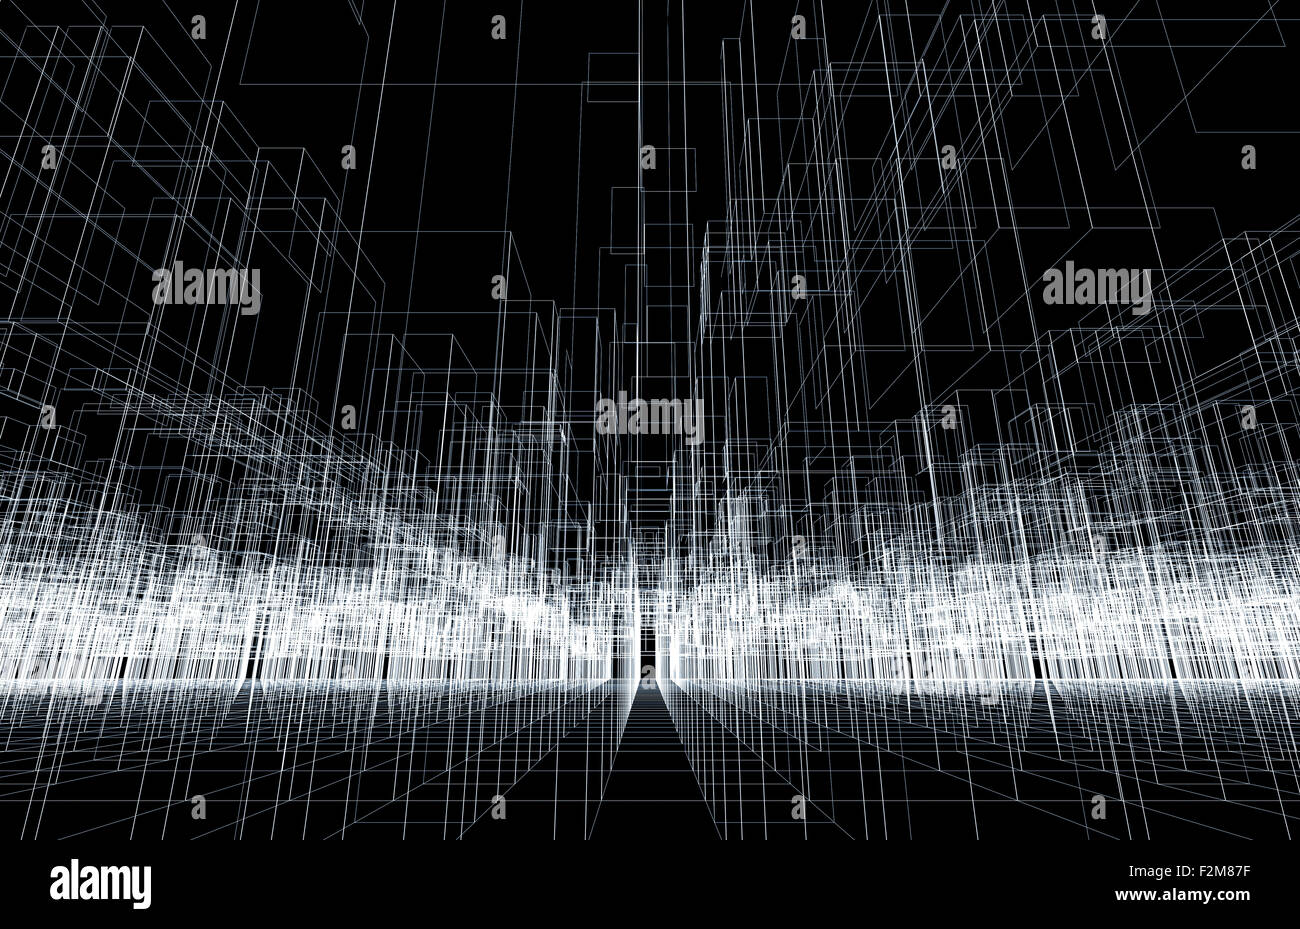 Digitalen Hintergrundtextur mit 3d Wire-Frame-Struktur, perspektivische Ansicht. Weiße Linien auf schwarzem Hintergrund Stockfoto